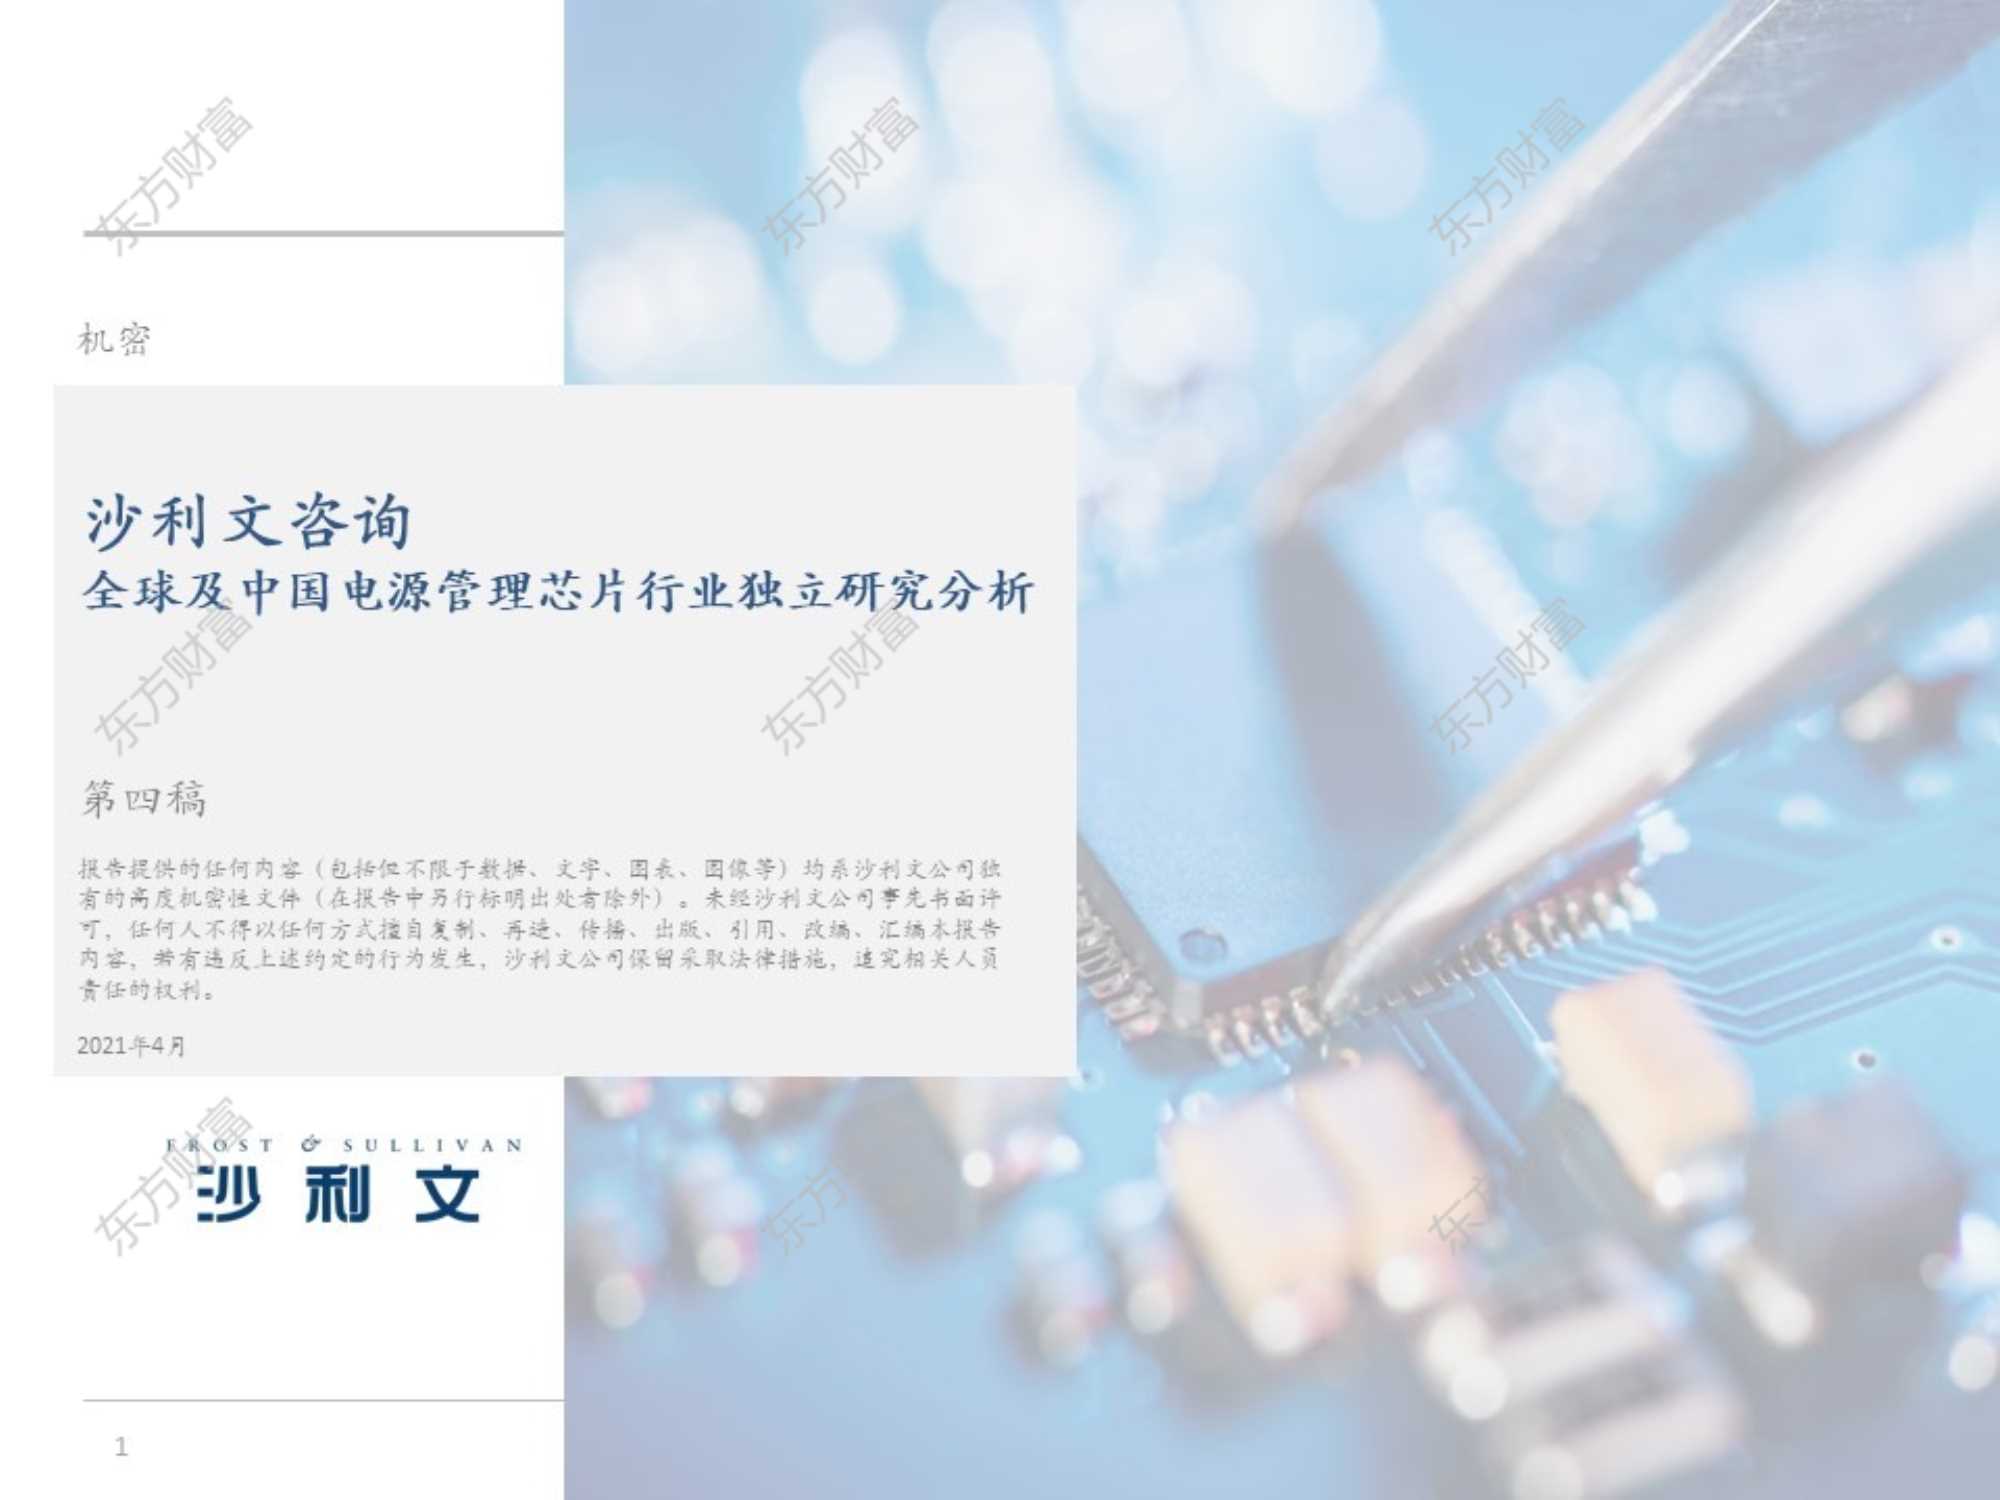 沙利文公司-全球及中国电源管理芯片行业独立研究分析-20210721-51页